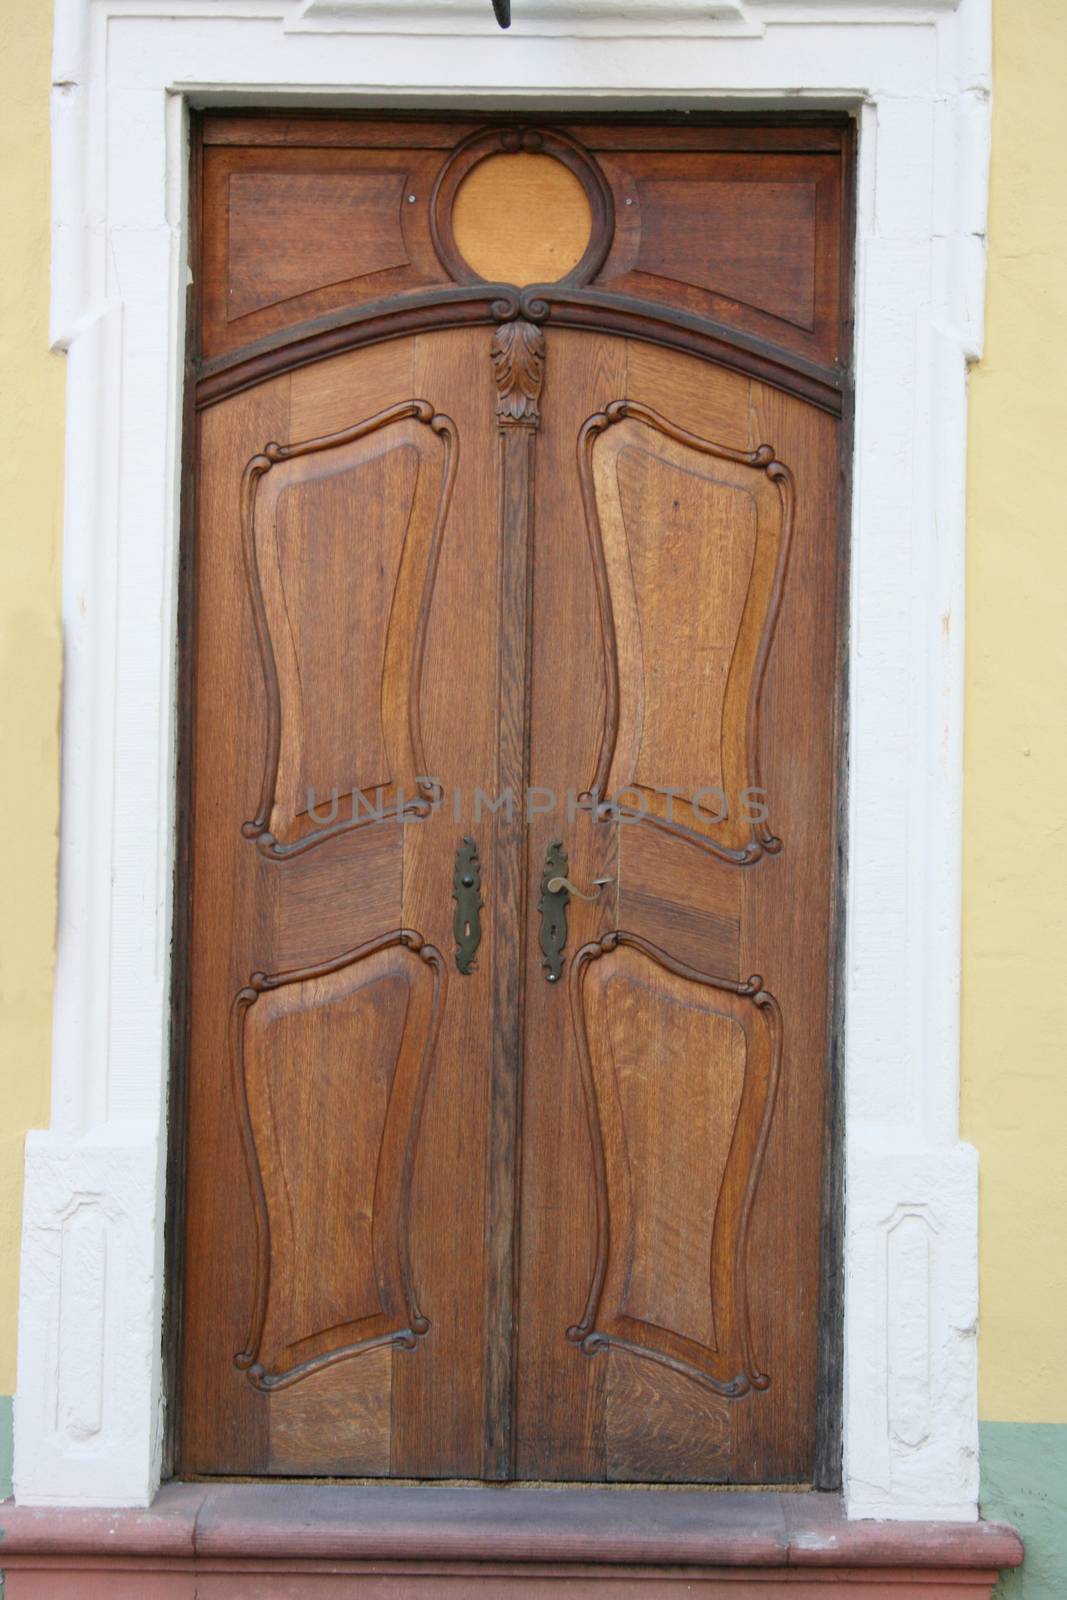 an old carved wooden door pattern with imagination    eine alte verzierte Holzhaust�r,mit Phantasie musterefm�tterchen by hadot